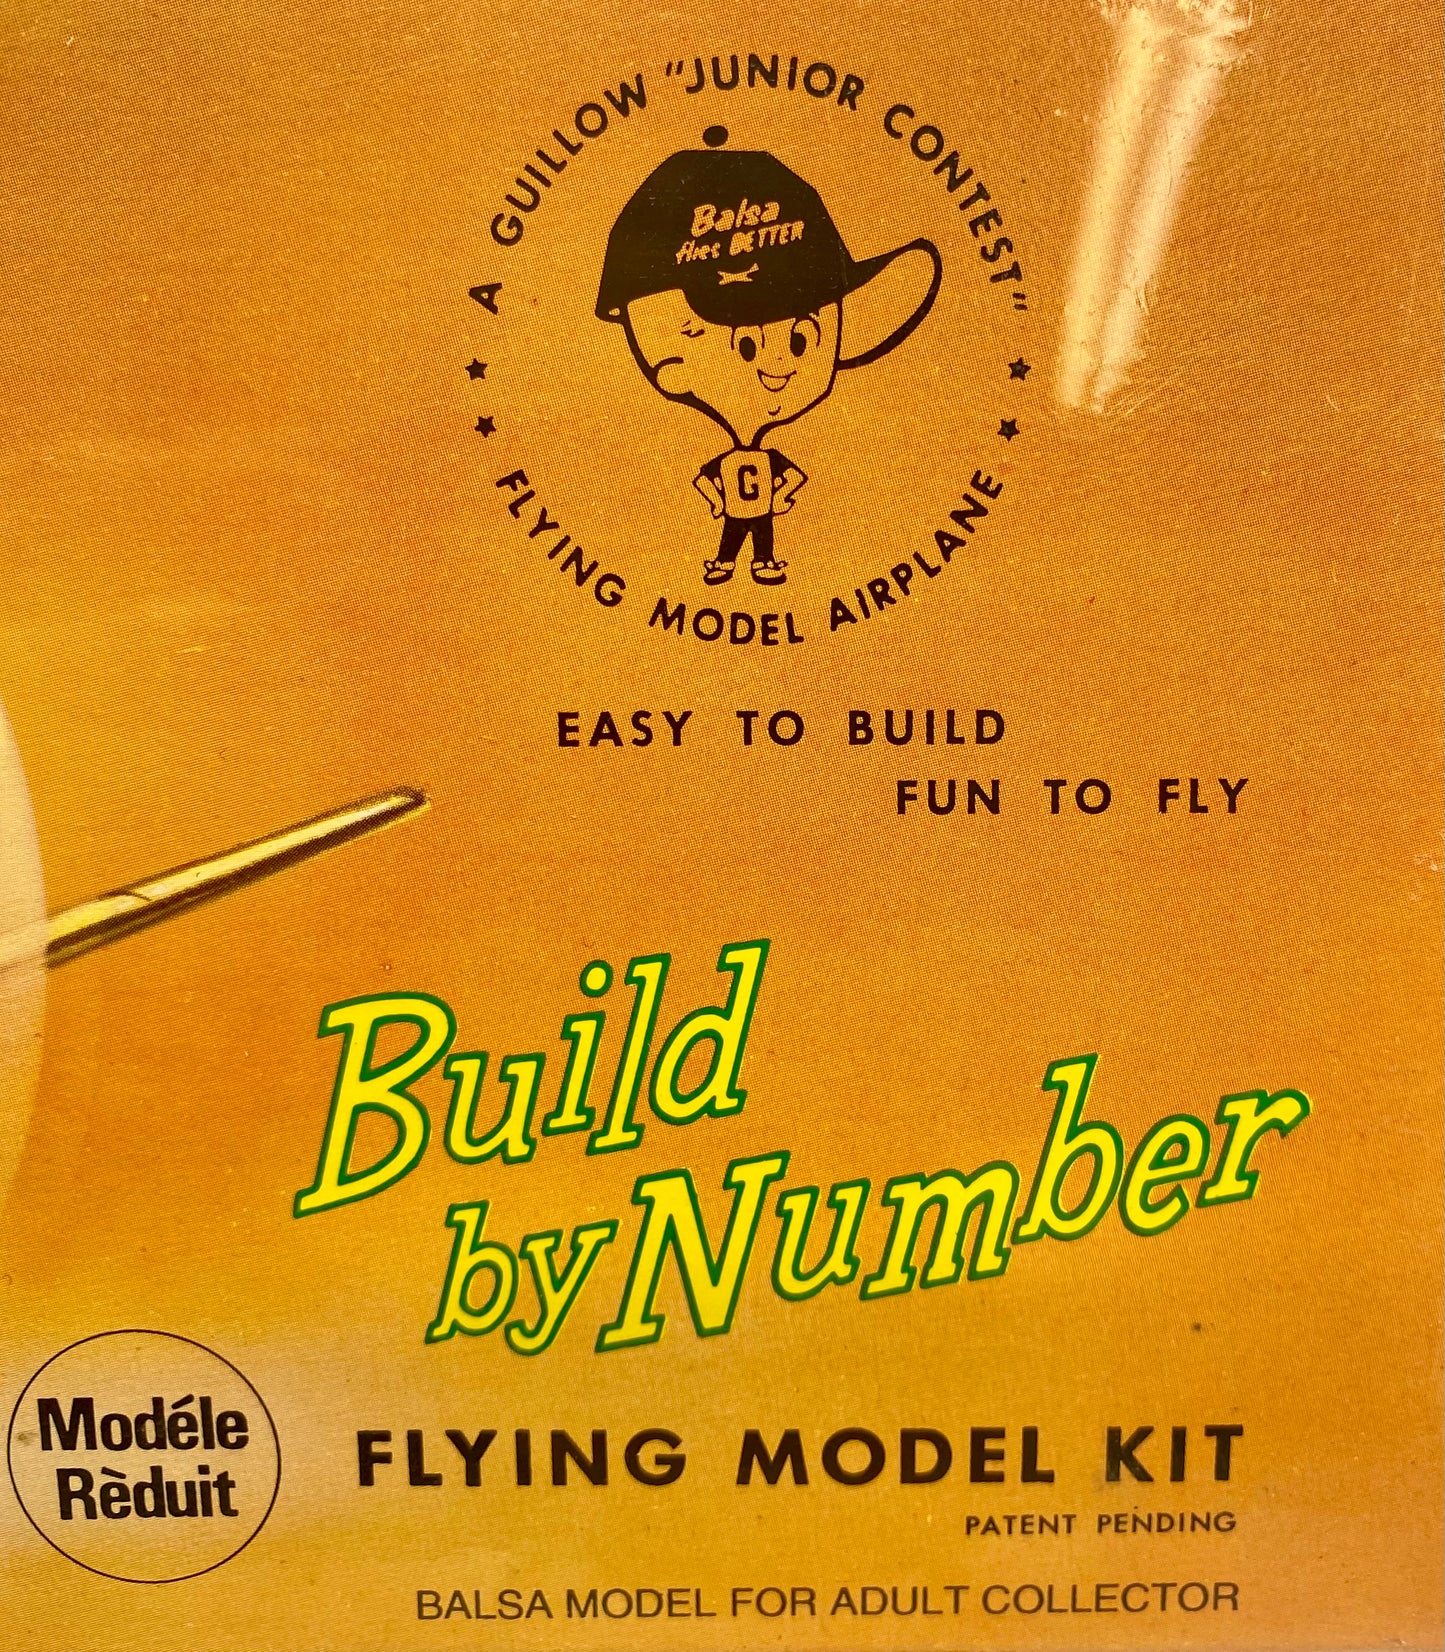 Guillow's Javlin - Factory Sealed - Balsa Wood Model Kit 24" Wingspan